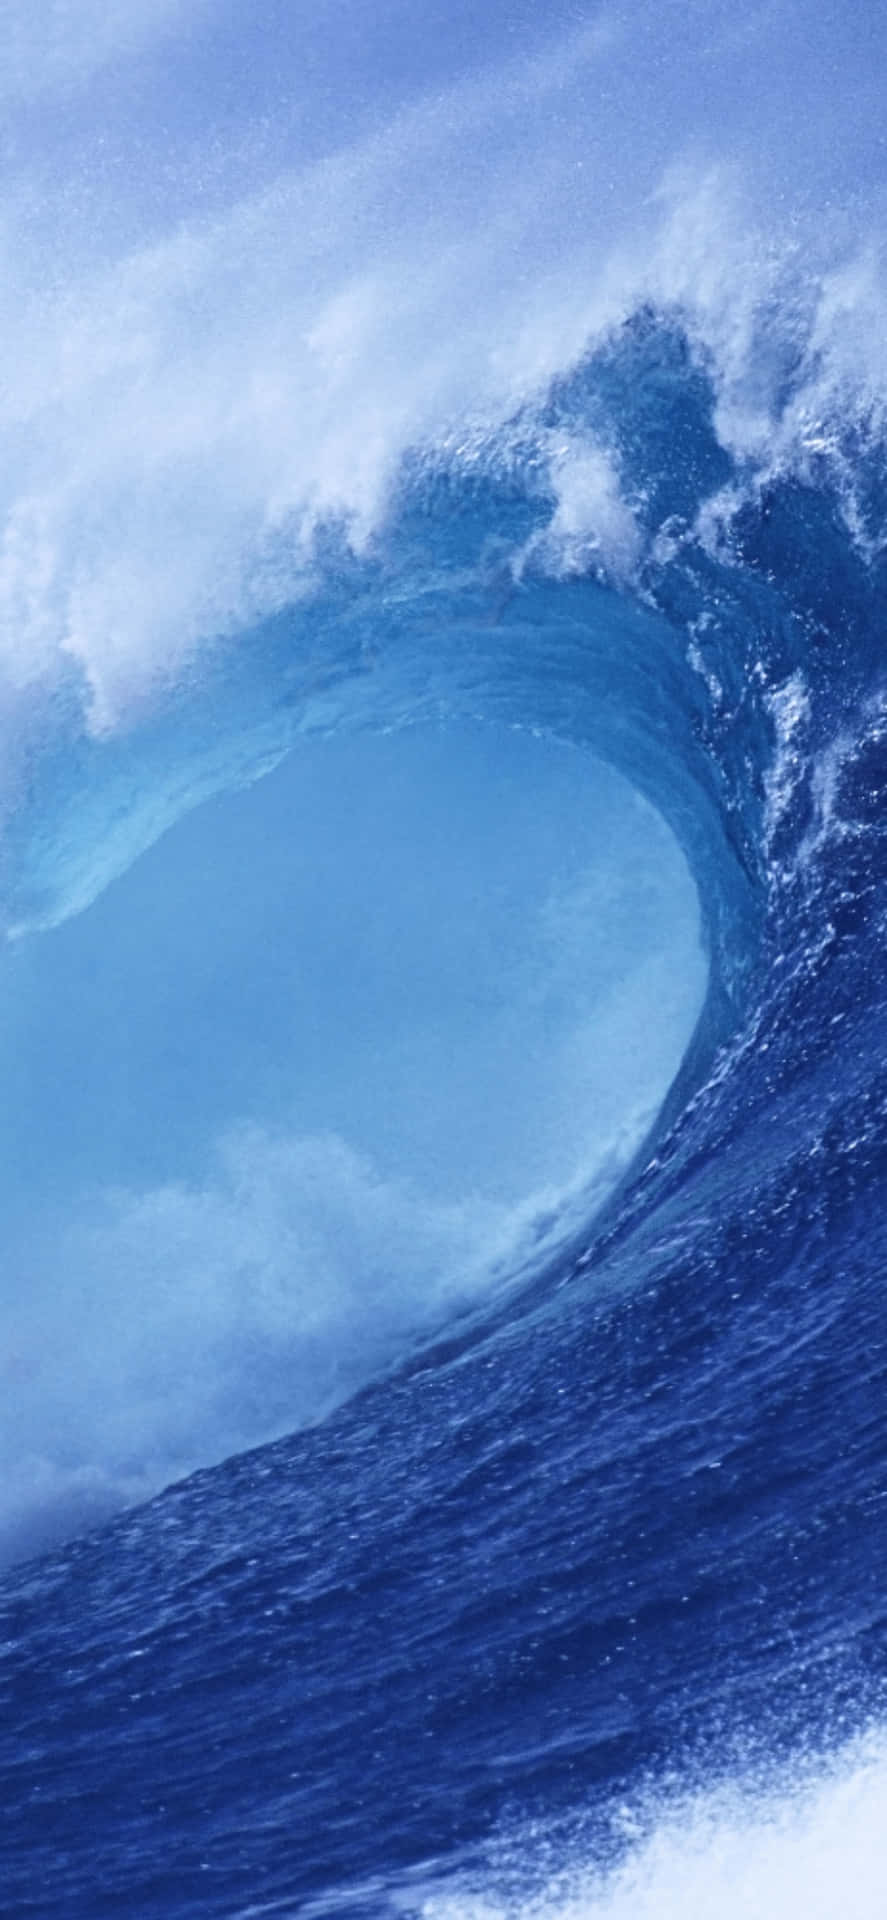 Iphoneclassic Ocean Wave: Iphone Klassisk Ocean Wave. Wallpaper